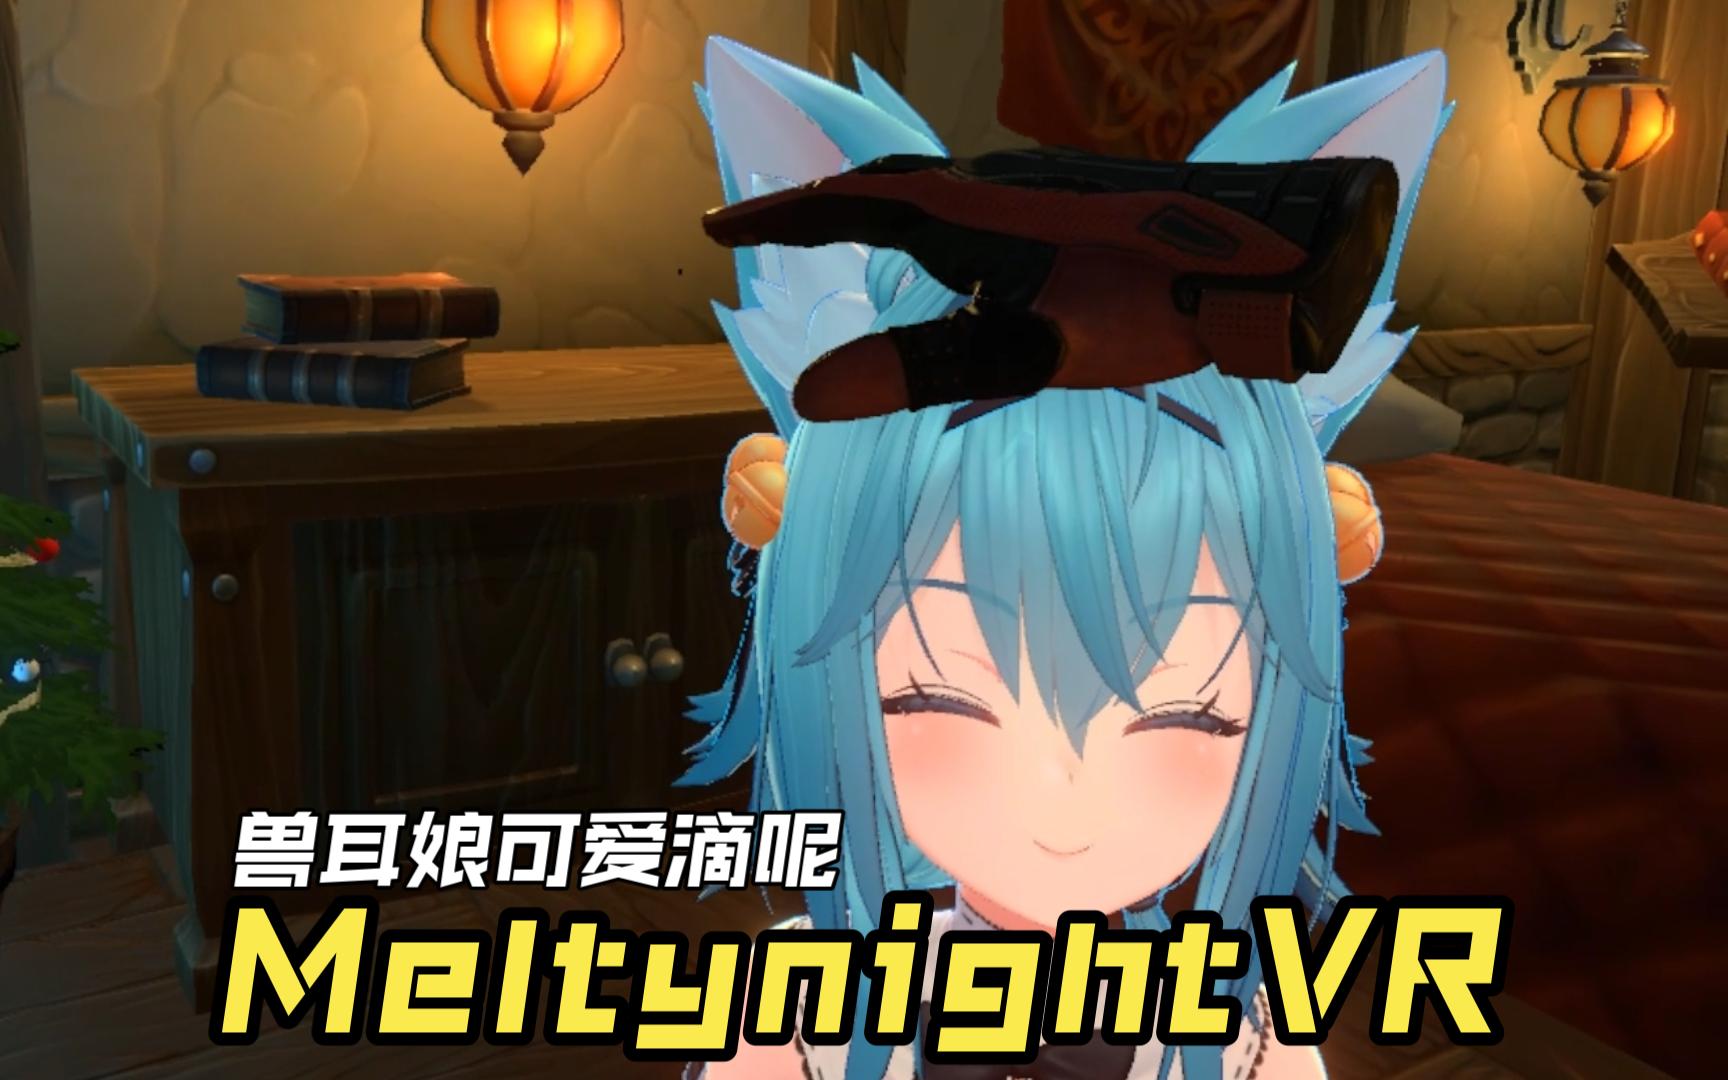 【VR】Meltynight VR